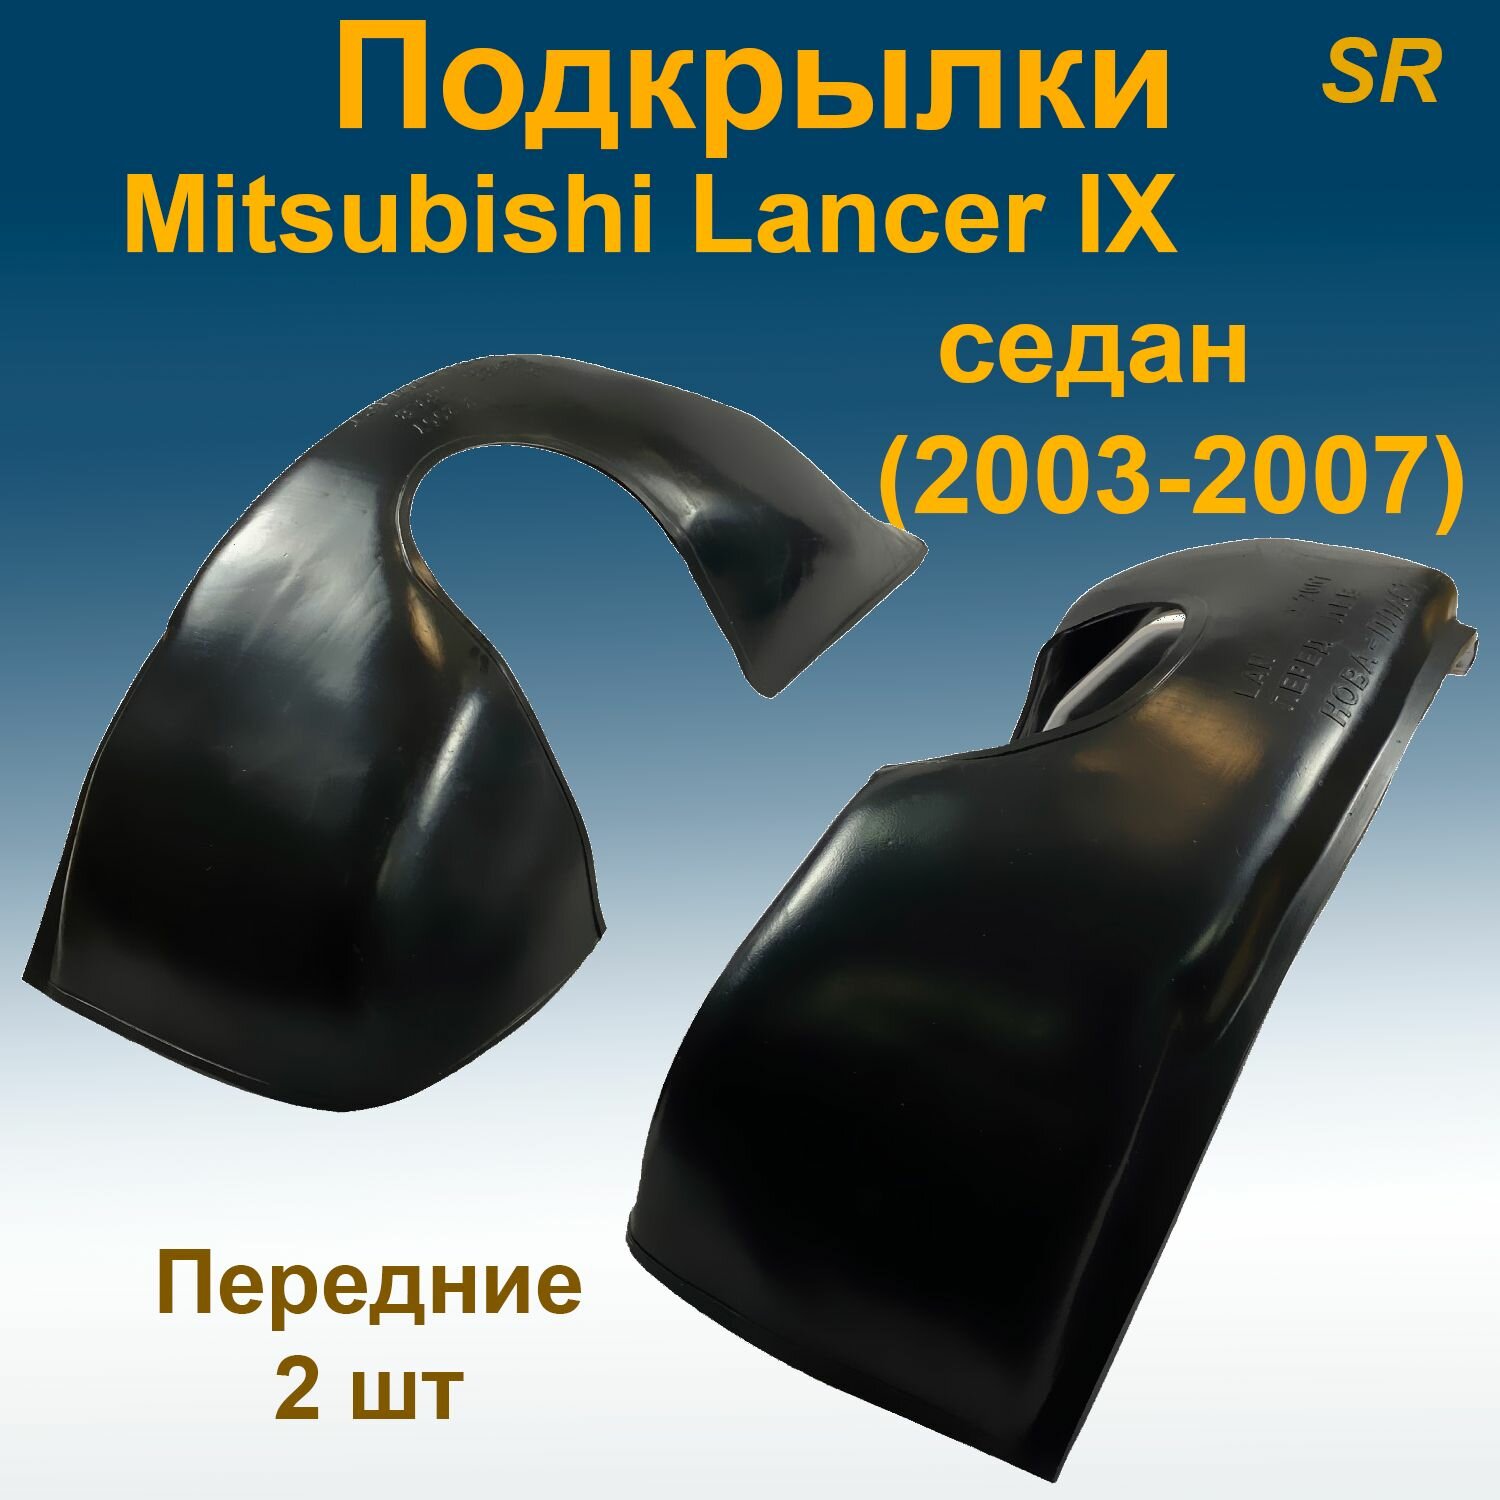 Подкрылки передние для Mitsubishi Lancer IX SD седан (2003-2007) 2 шт